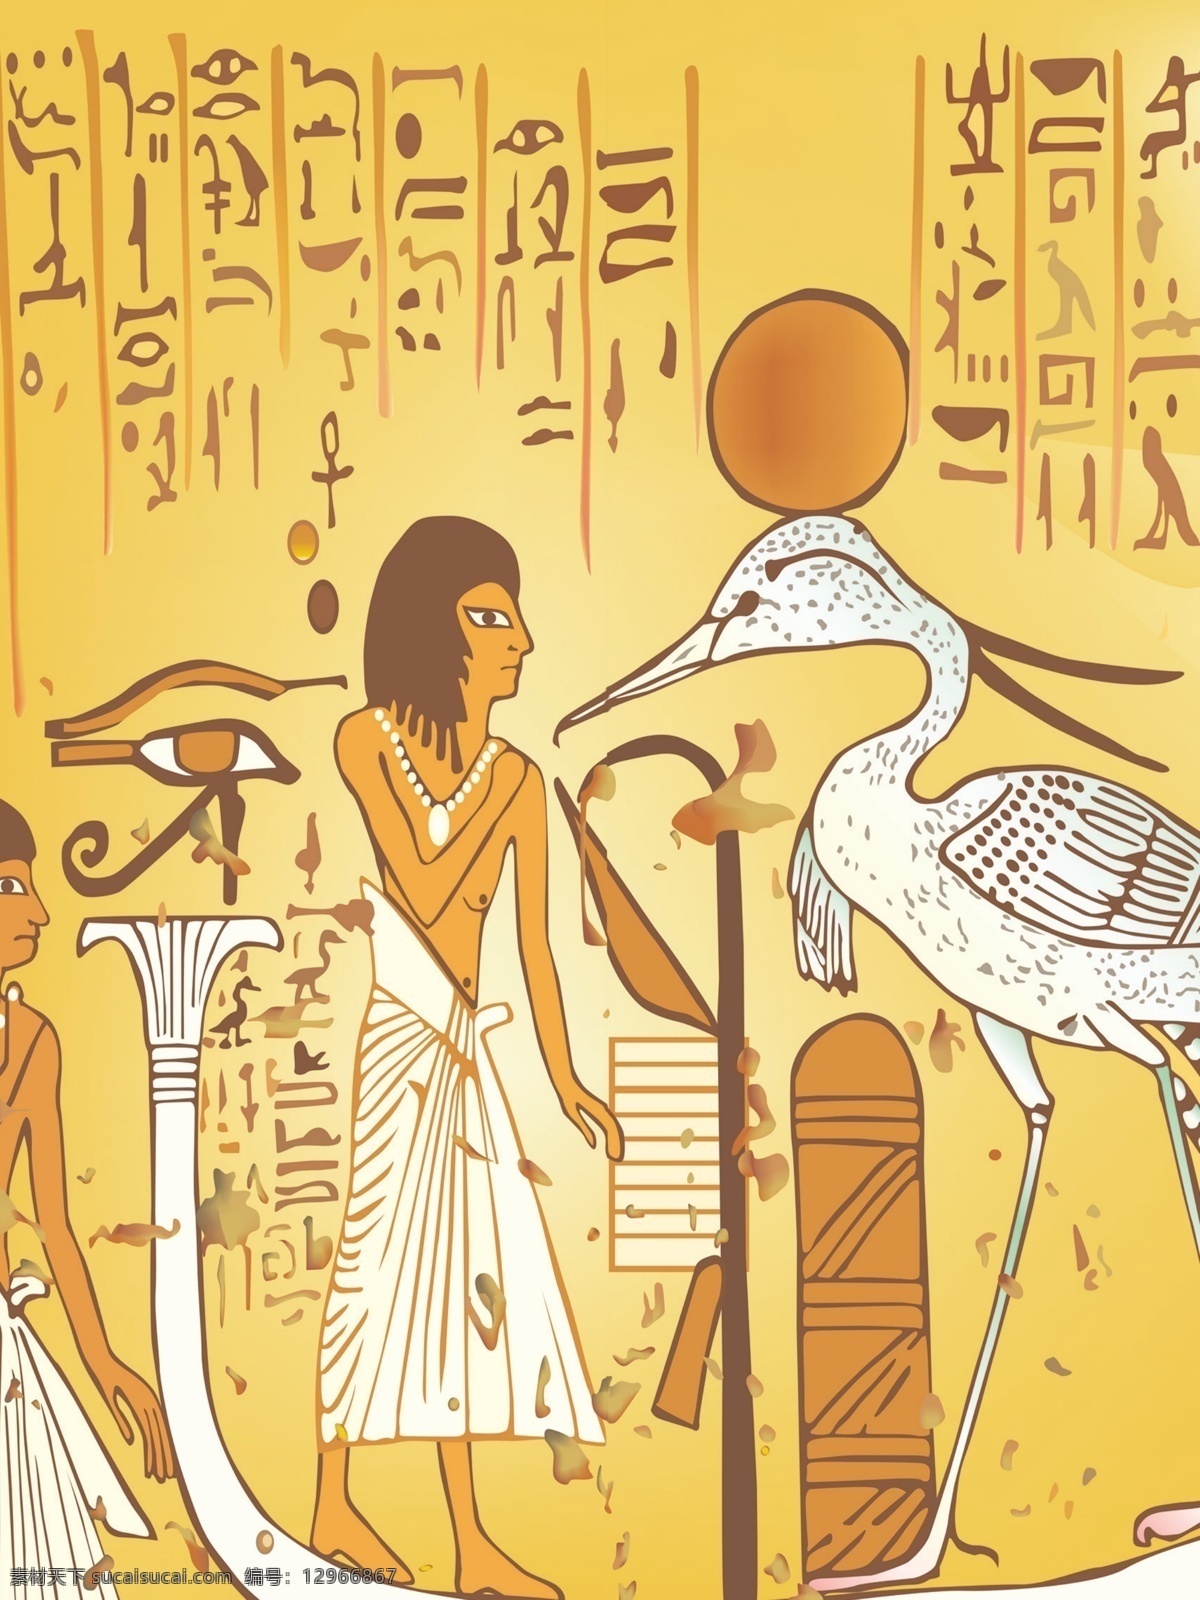 埃及 文化 广告设计模板 移门图案 源文件 埃及文化 古老文化 移门图库专家 装饰素材